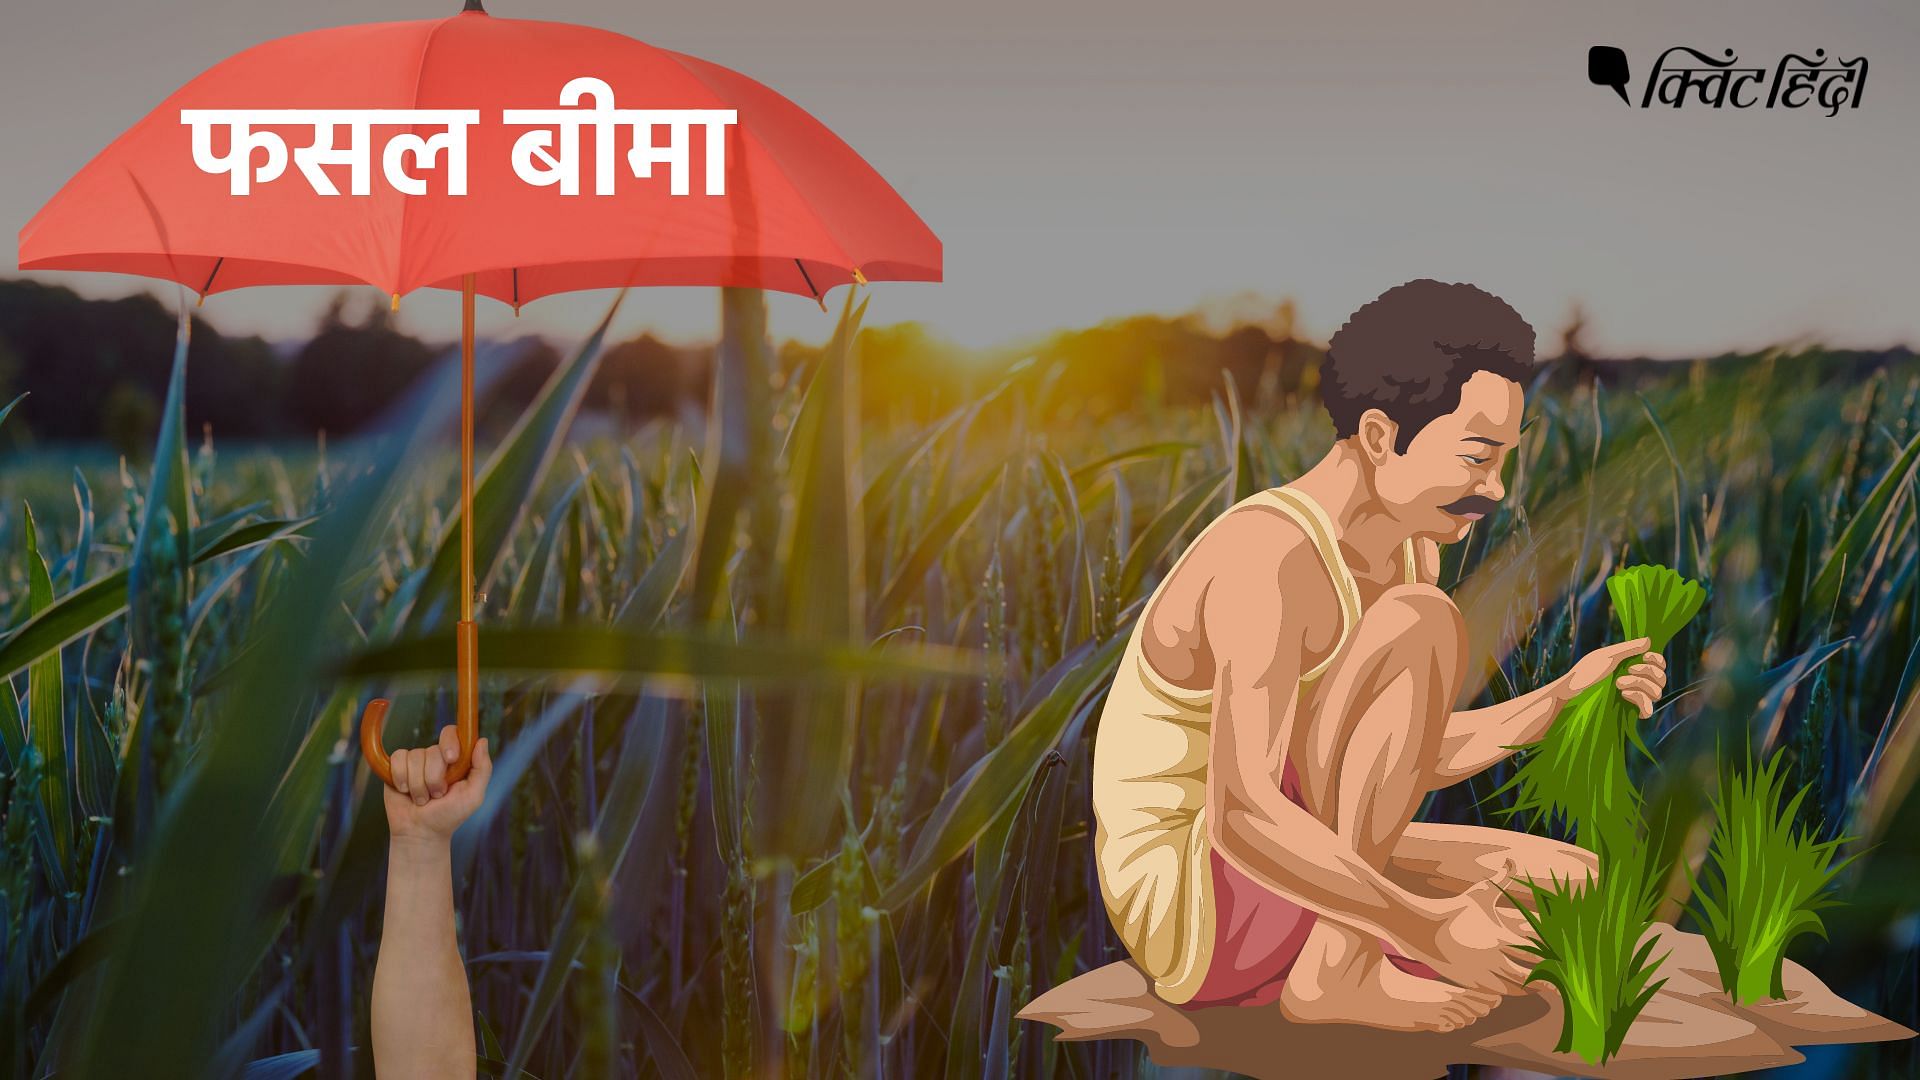 <div class="paragraphs"><p>Crop Insurance: भारत के किसान फसल बीमा क्यों नहीं लेना चाहते? </p></div>